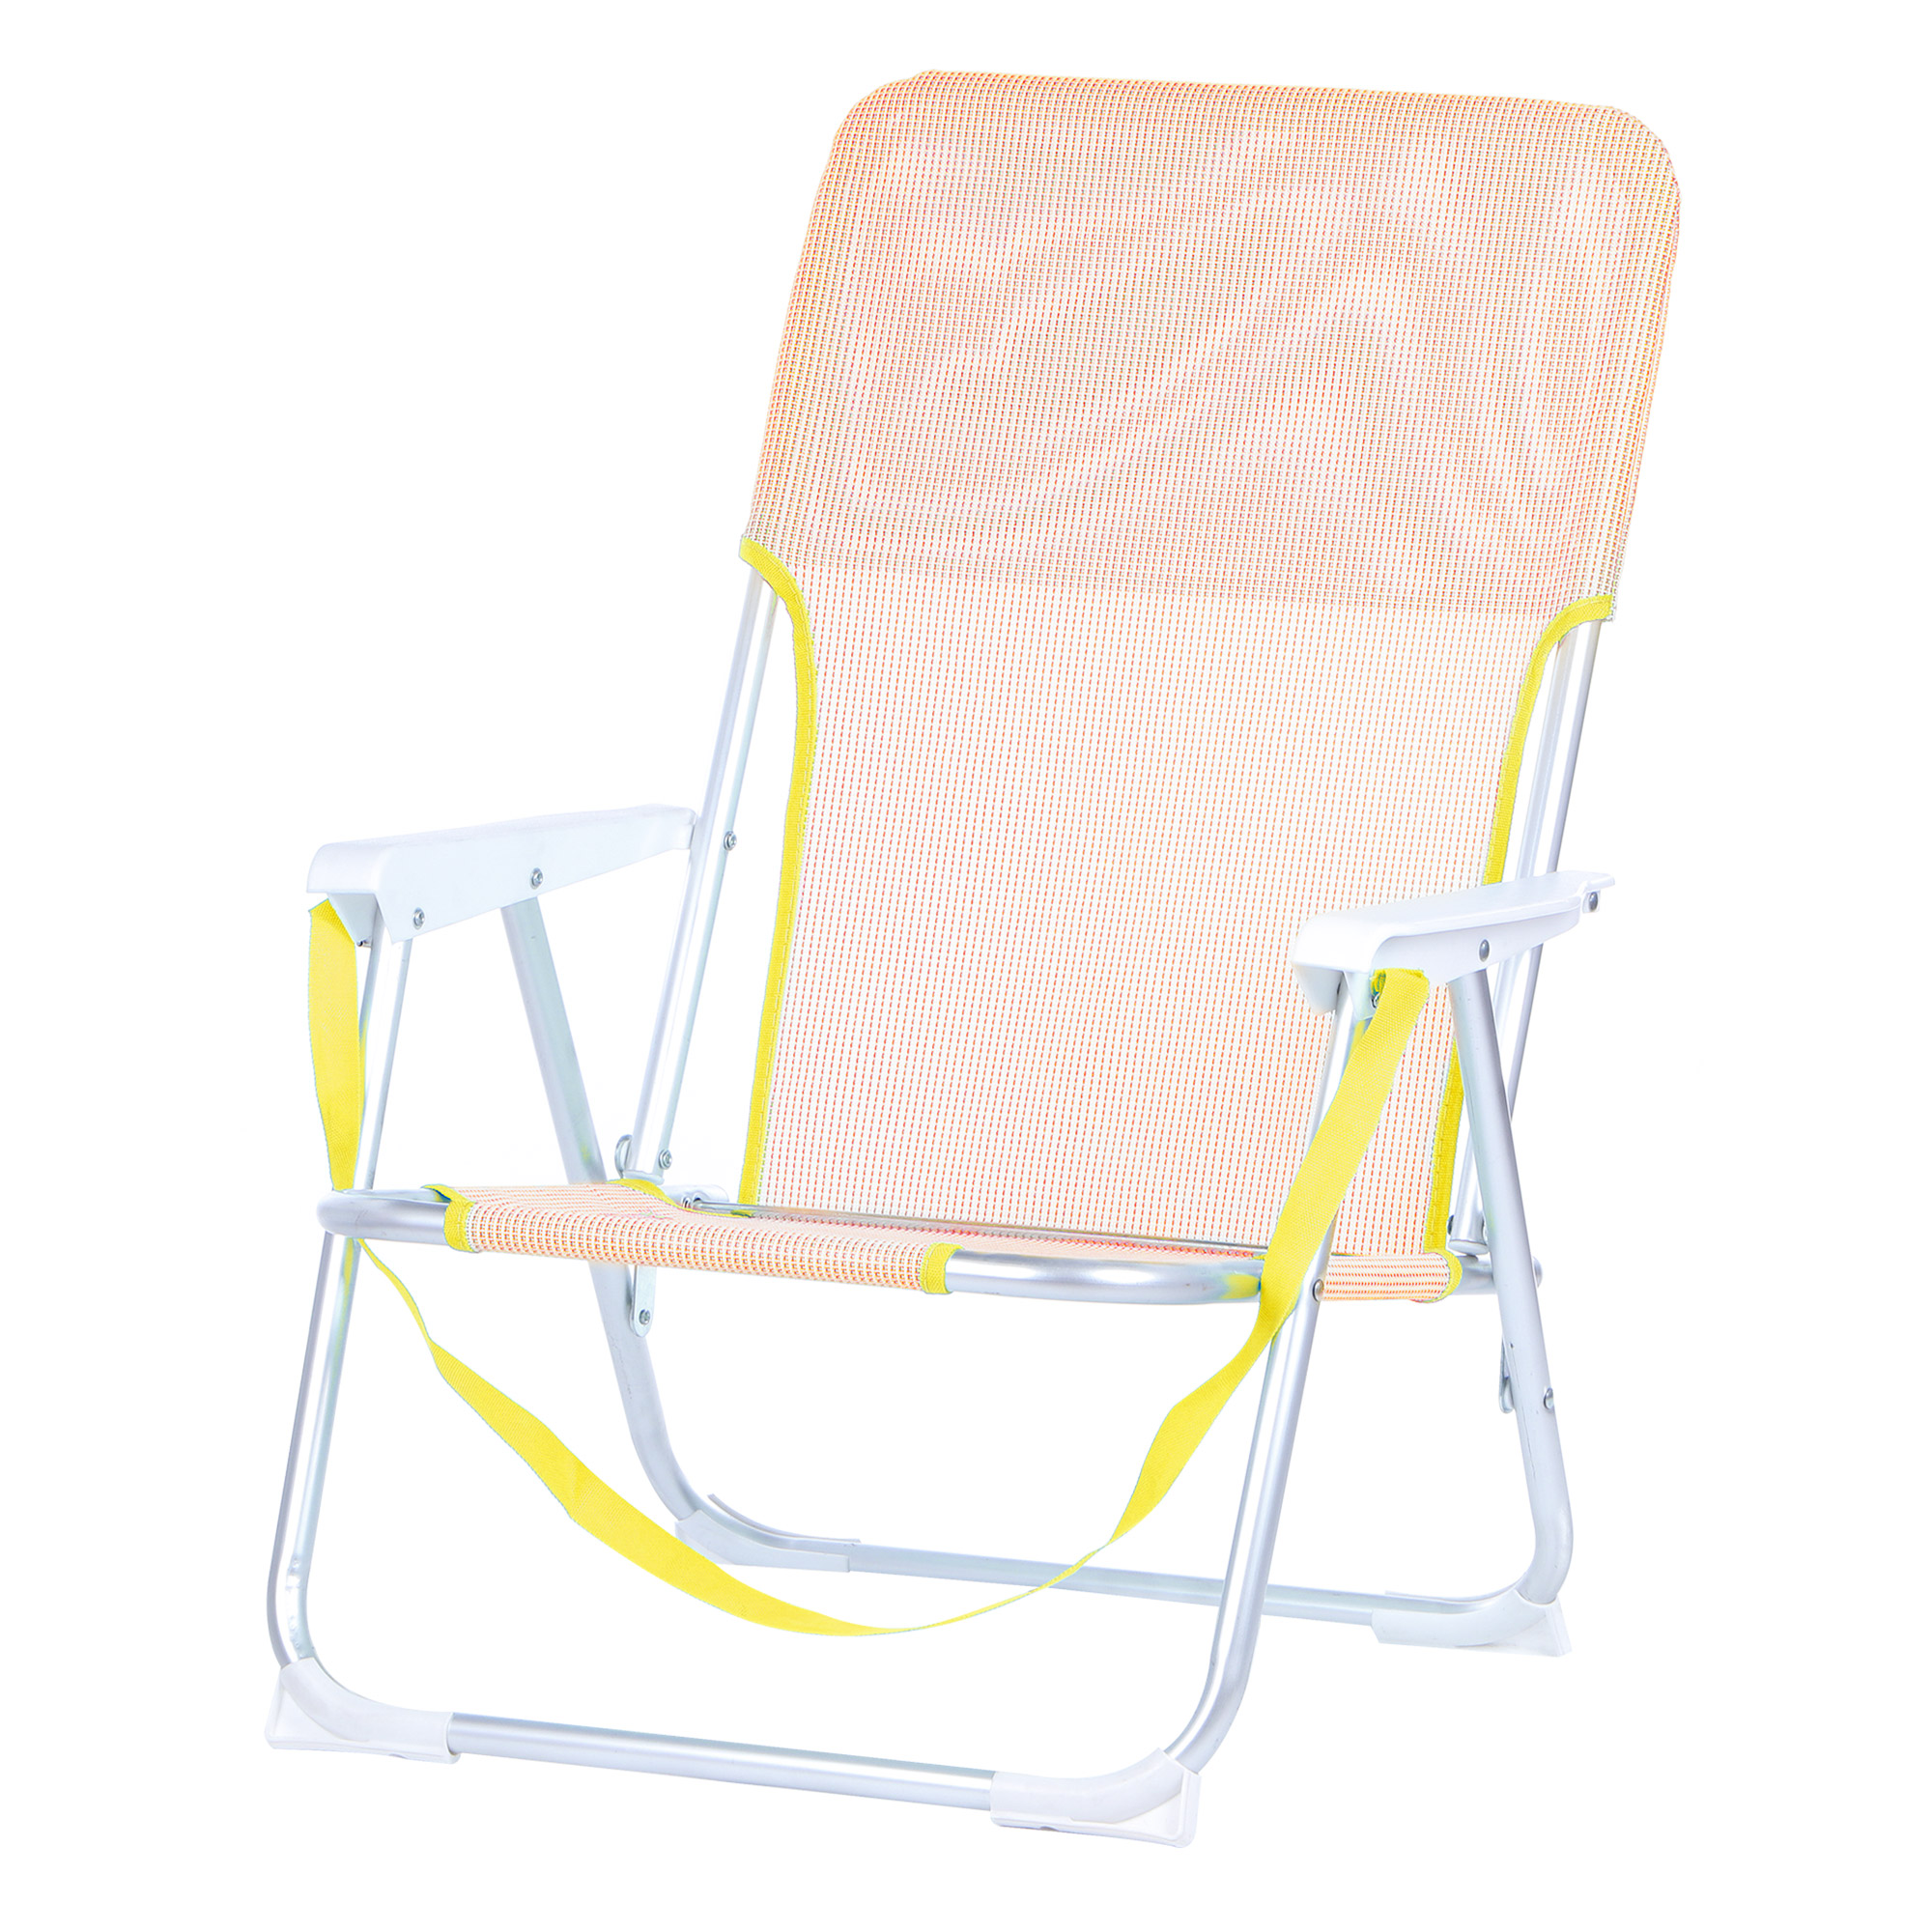 Кресло складное для кемпинга Koopman furniture 40x56x70cm, цвет в ассортименте, размер 40x56x70 см - фото 6